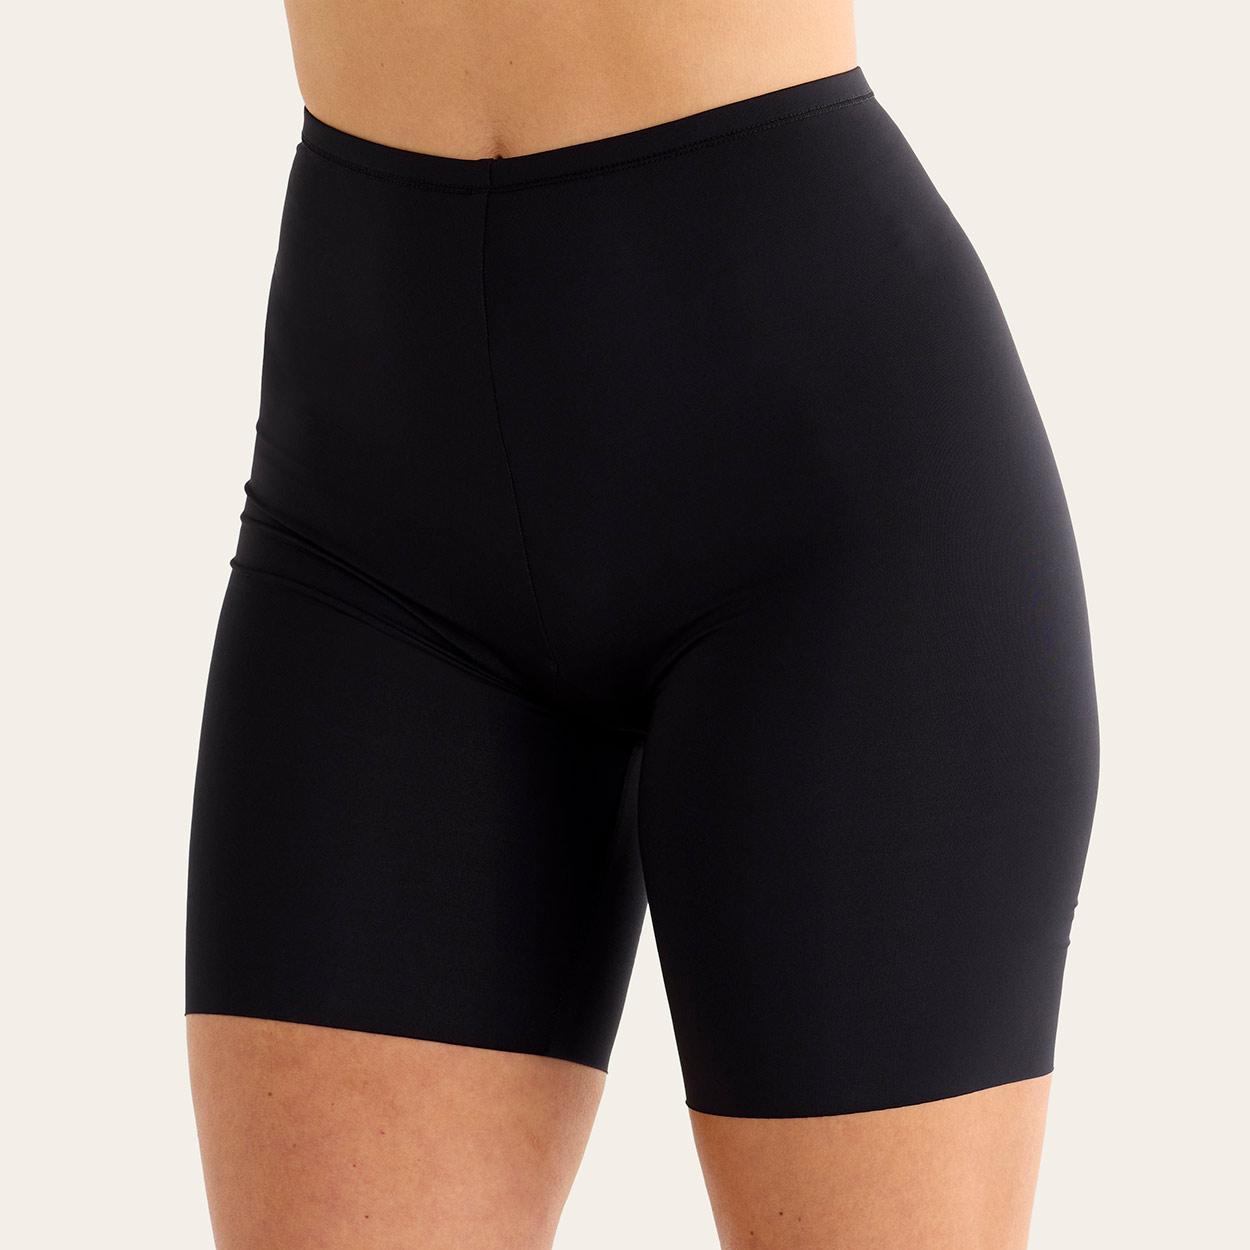 Swegmark Panty Modell Cool & Dry in Farbe Schwarz in der Seitansicht